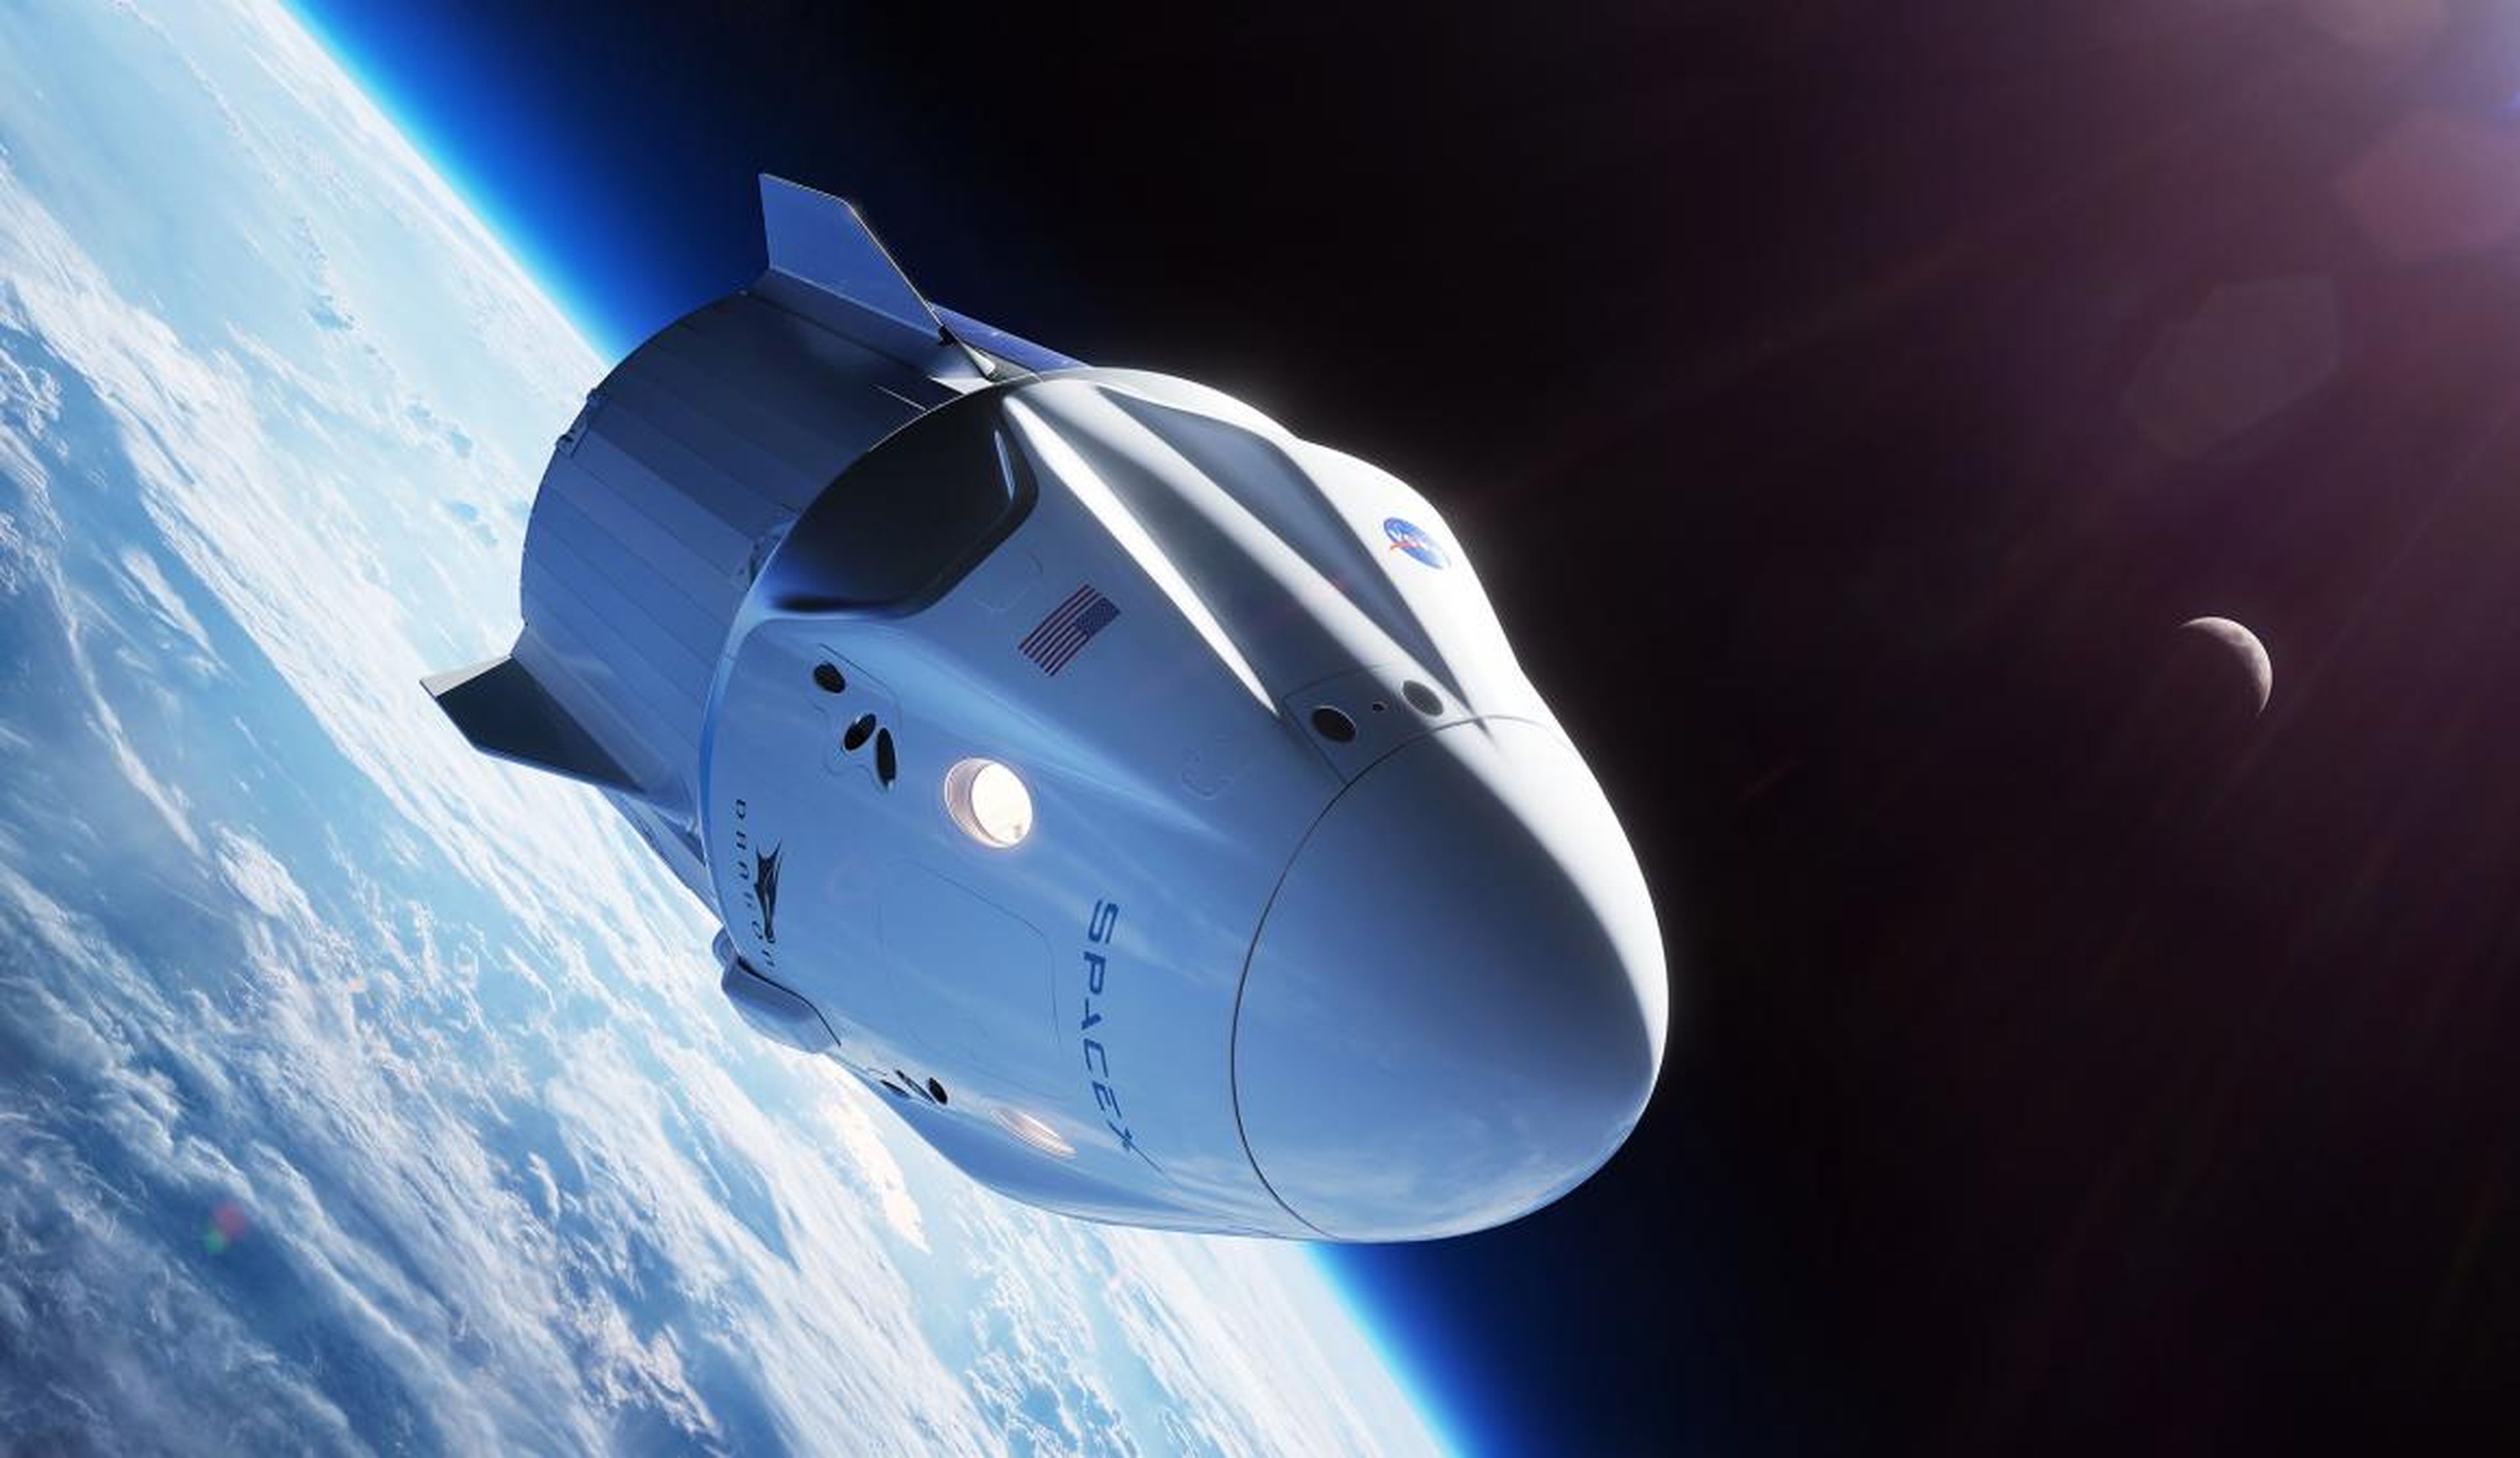 Una ilustración de la nave espacial Crew Dragon de SpaceX, también conocida como Dragon 2 o Dragon V2, que orbita la Tierra.